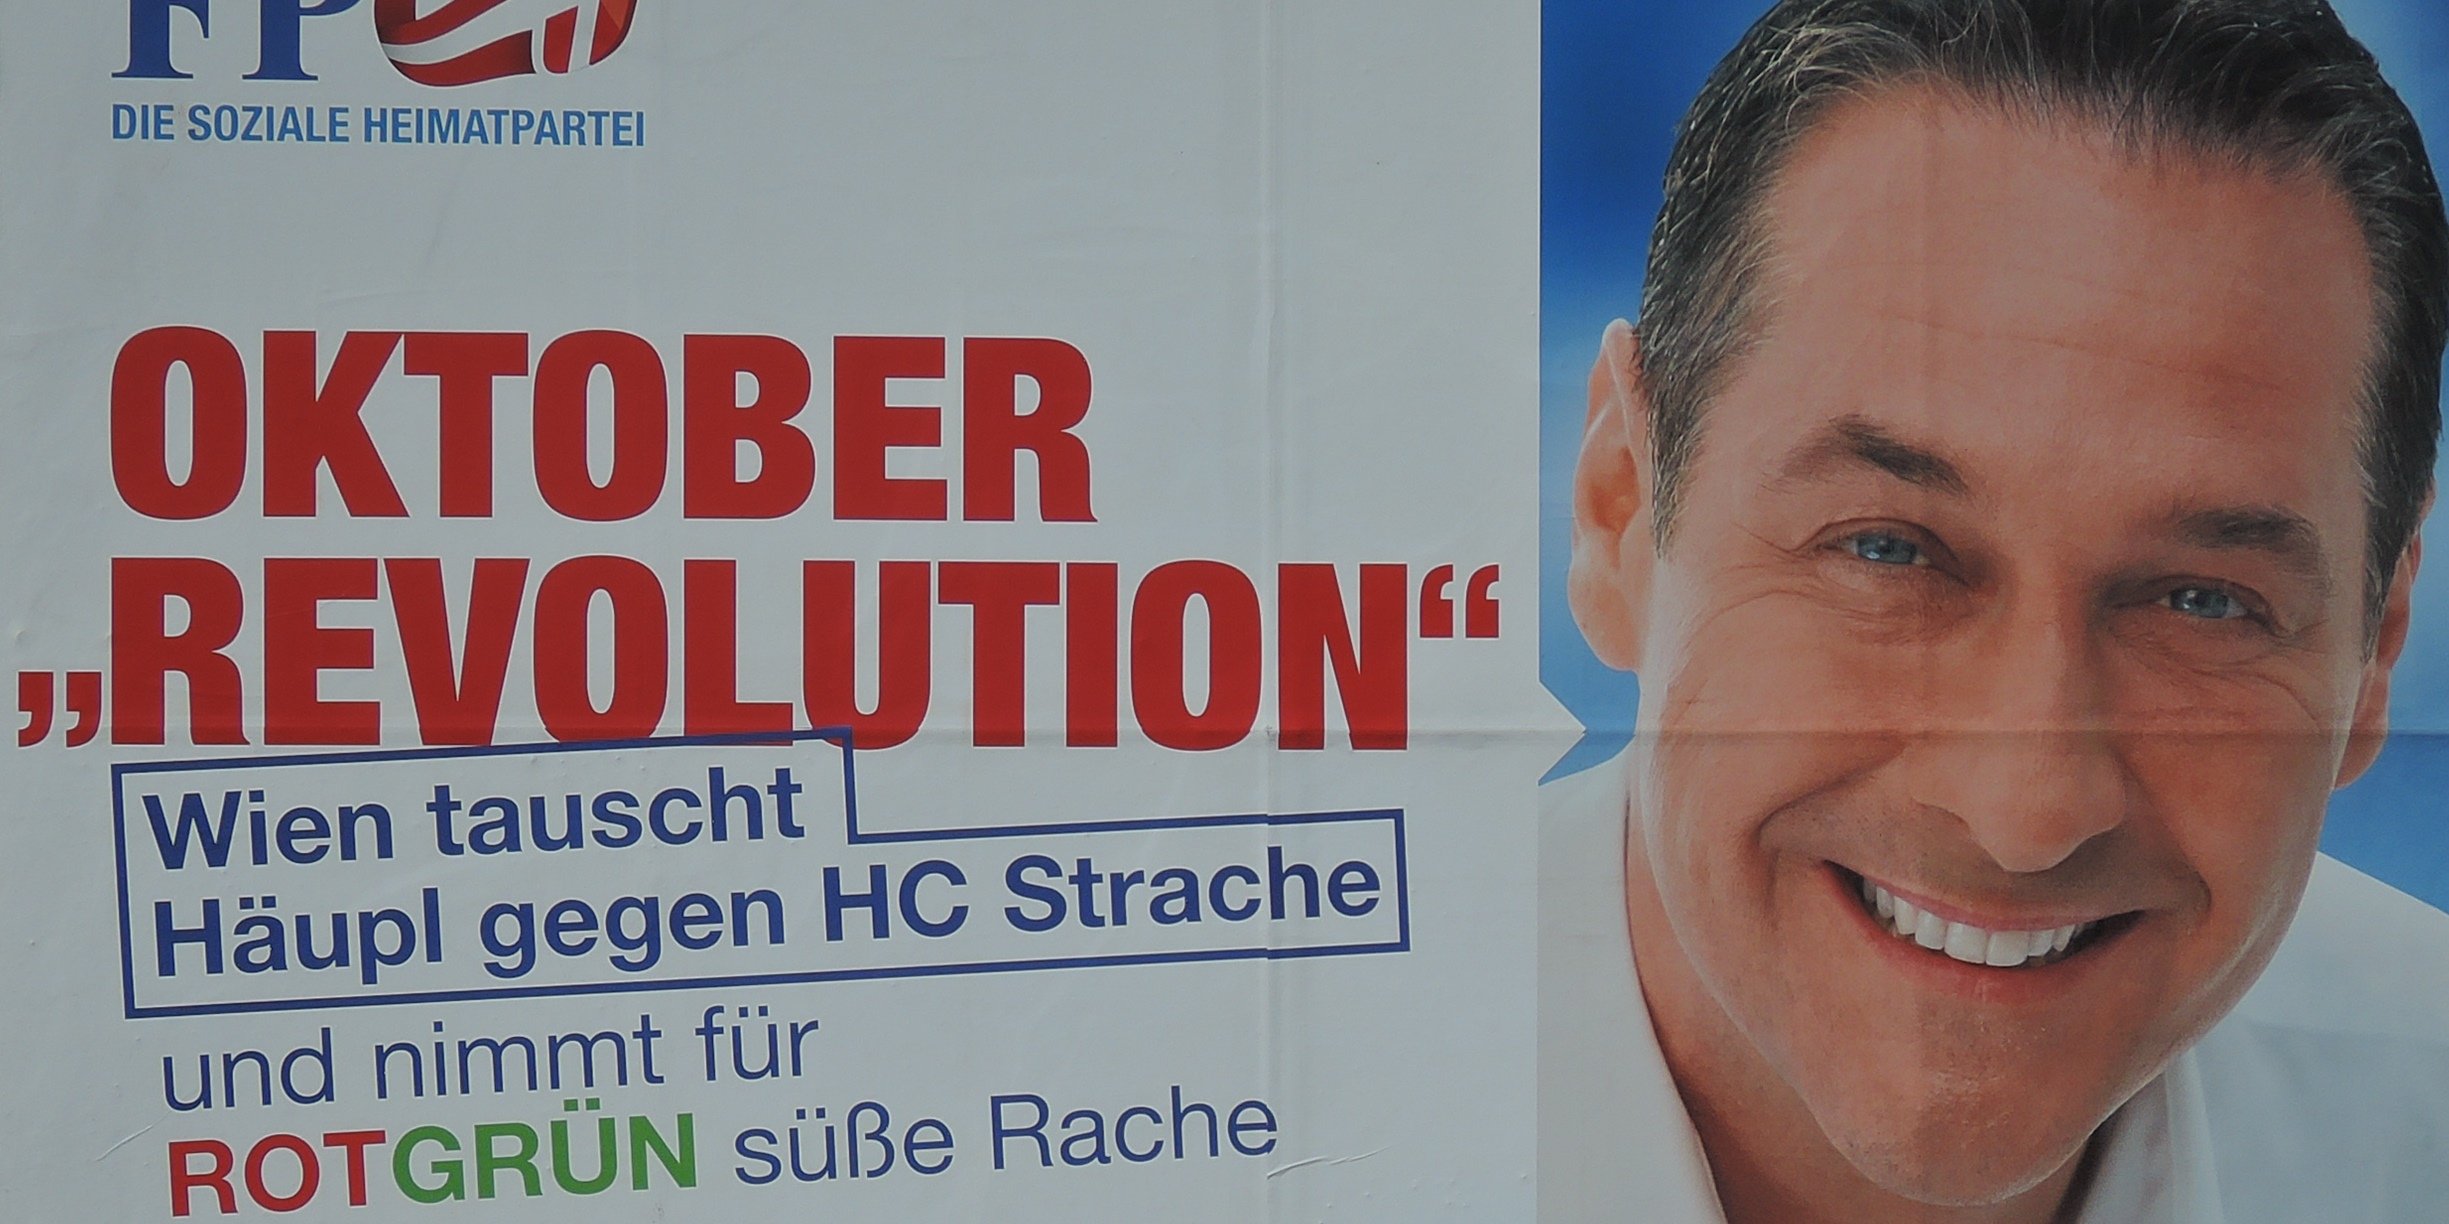 FPÖ Plakat Wien Wahl 2015 mit Slogan Oktober Revolution nebst grinsendem HC Strache